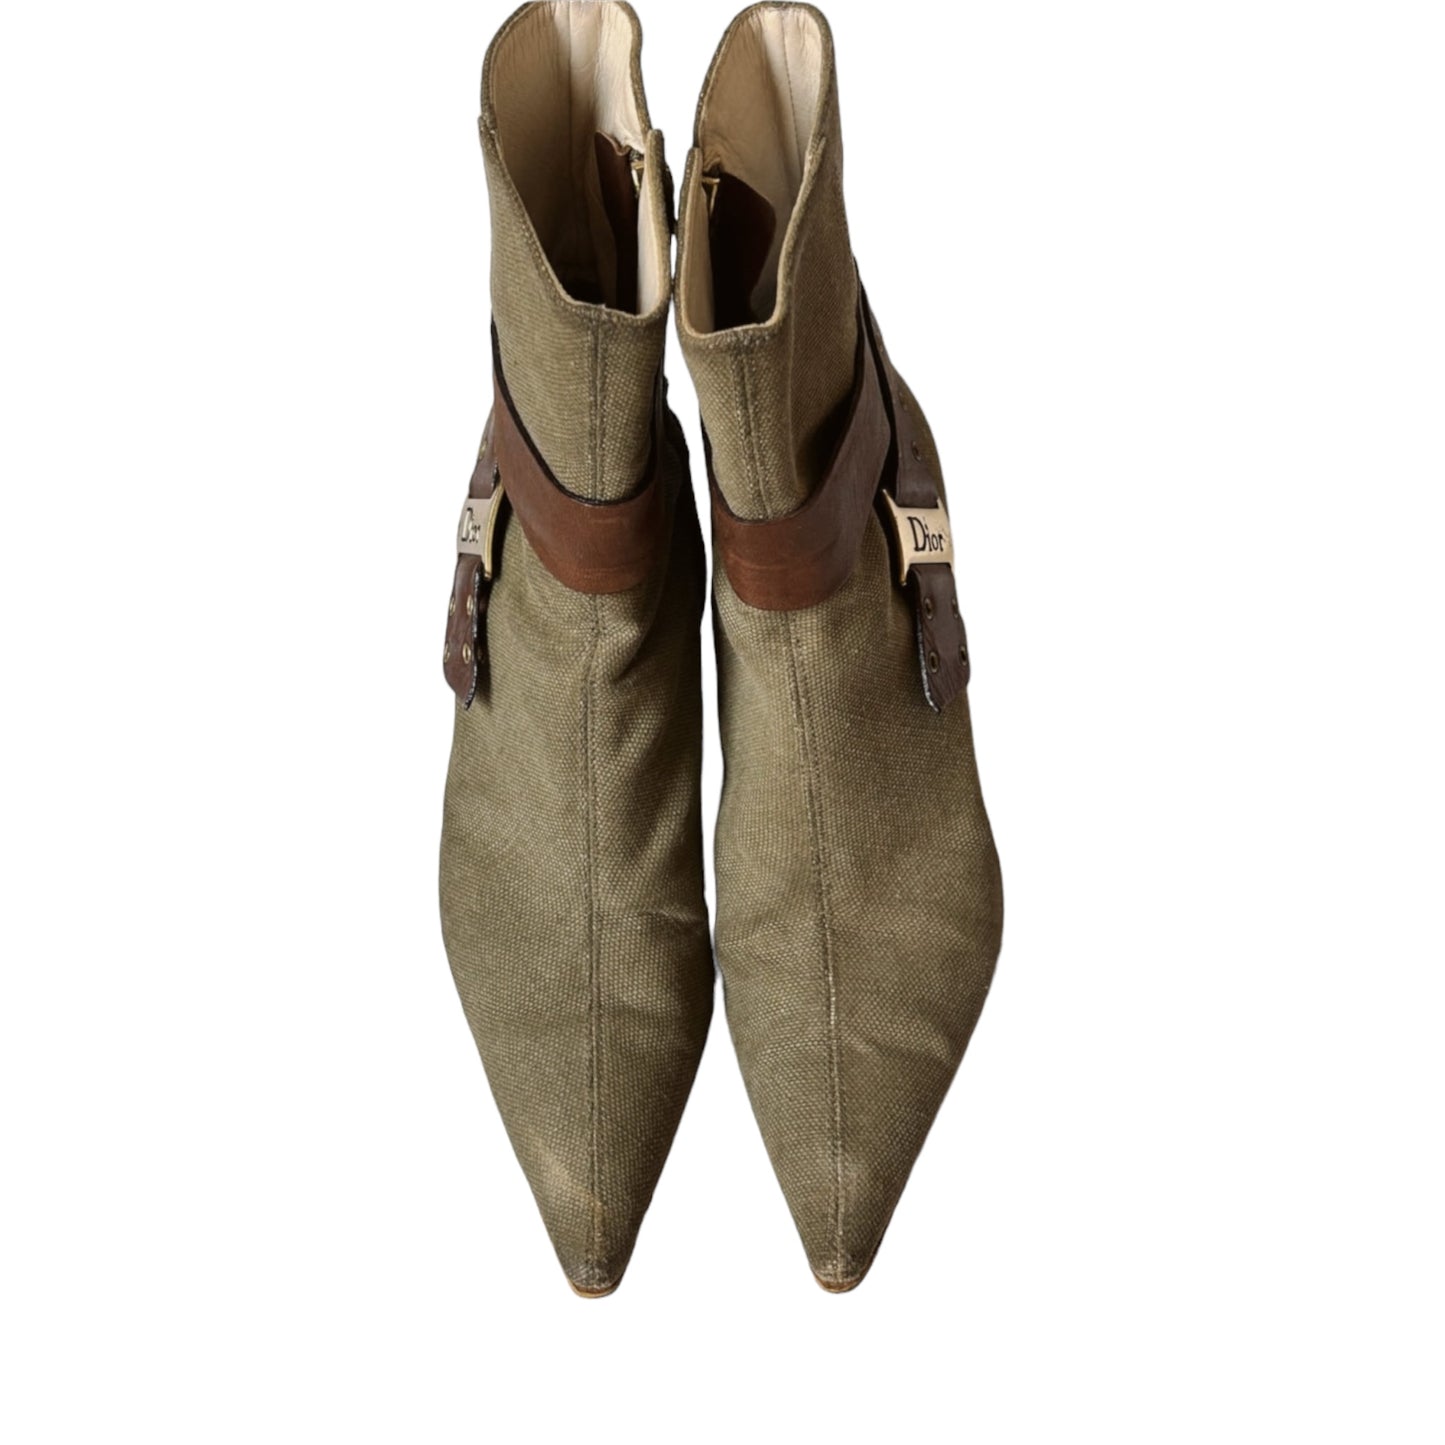 Vintage Dior 2000s khaki ankle boots